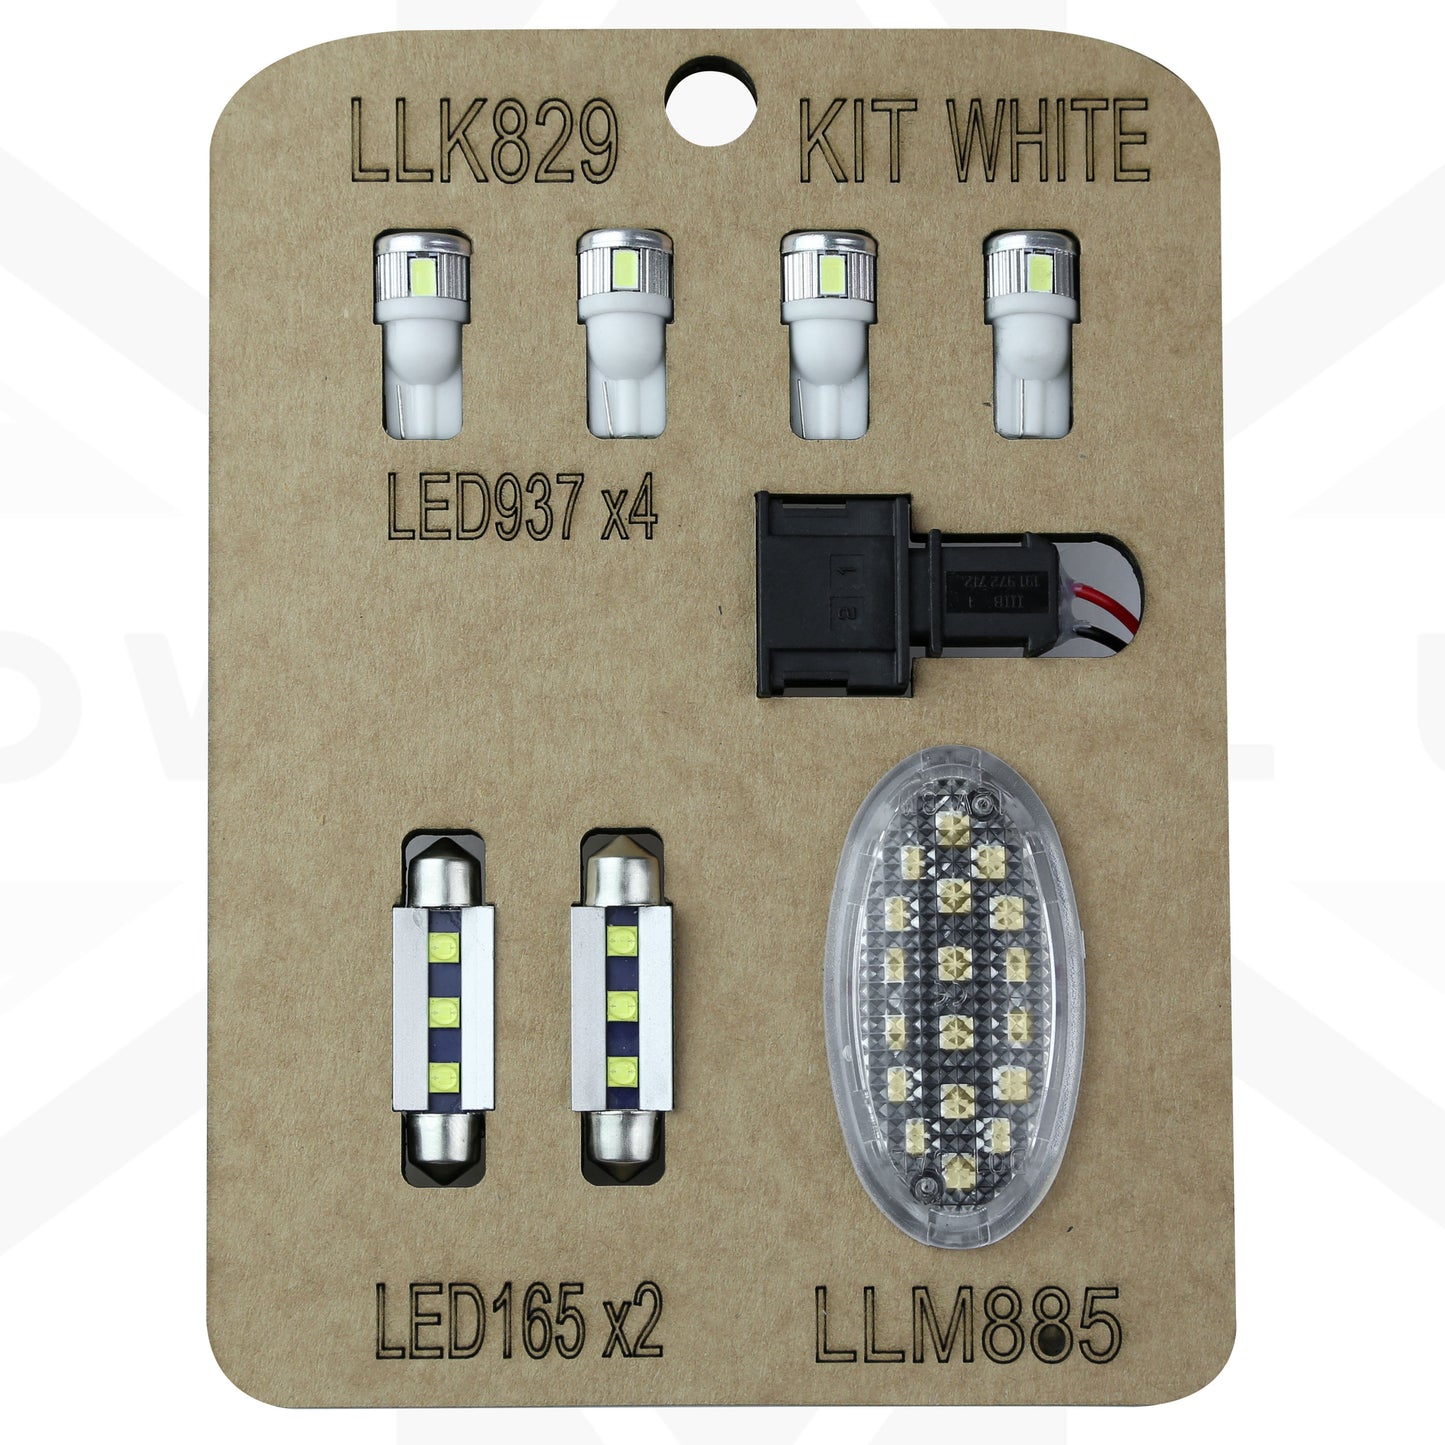 LED Interior Light kit in White for Land Rover Freelander 2 (NO Map Light Version)